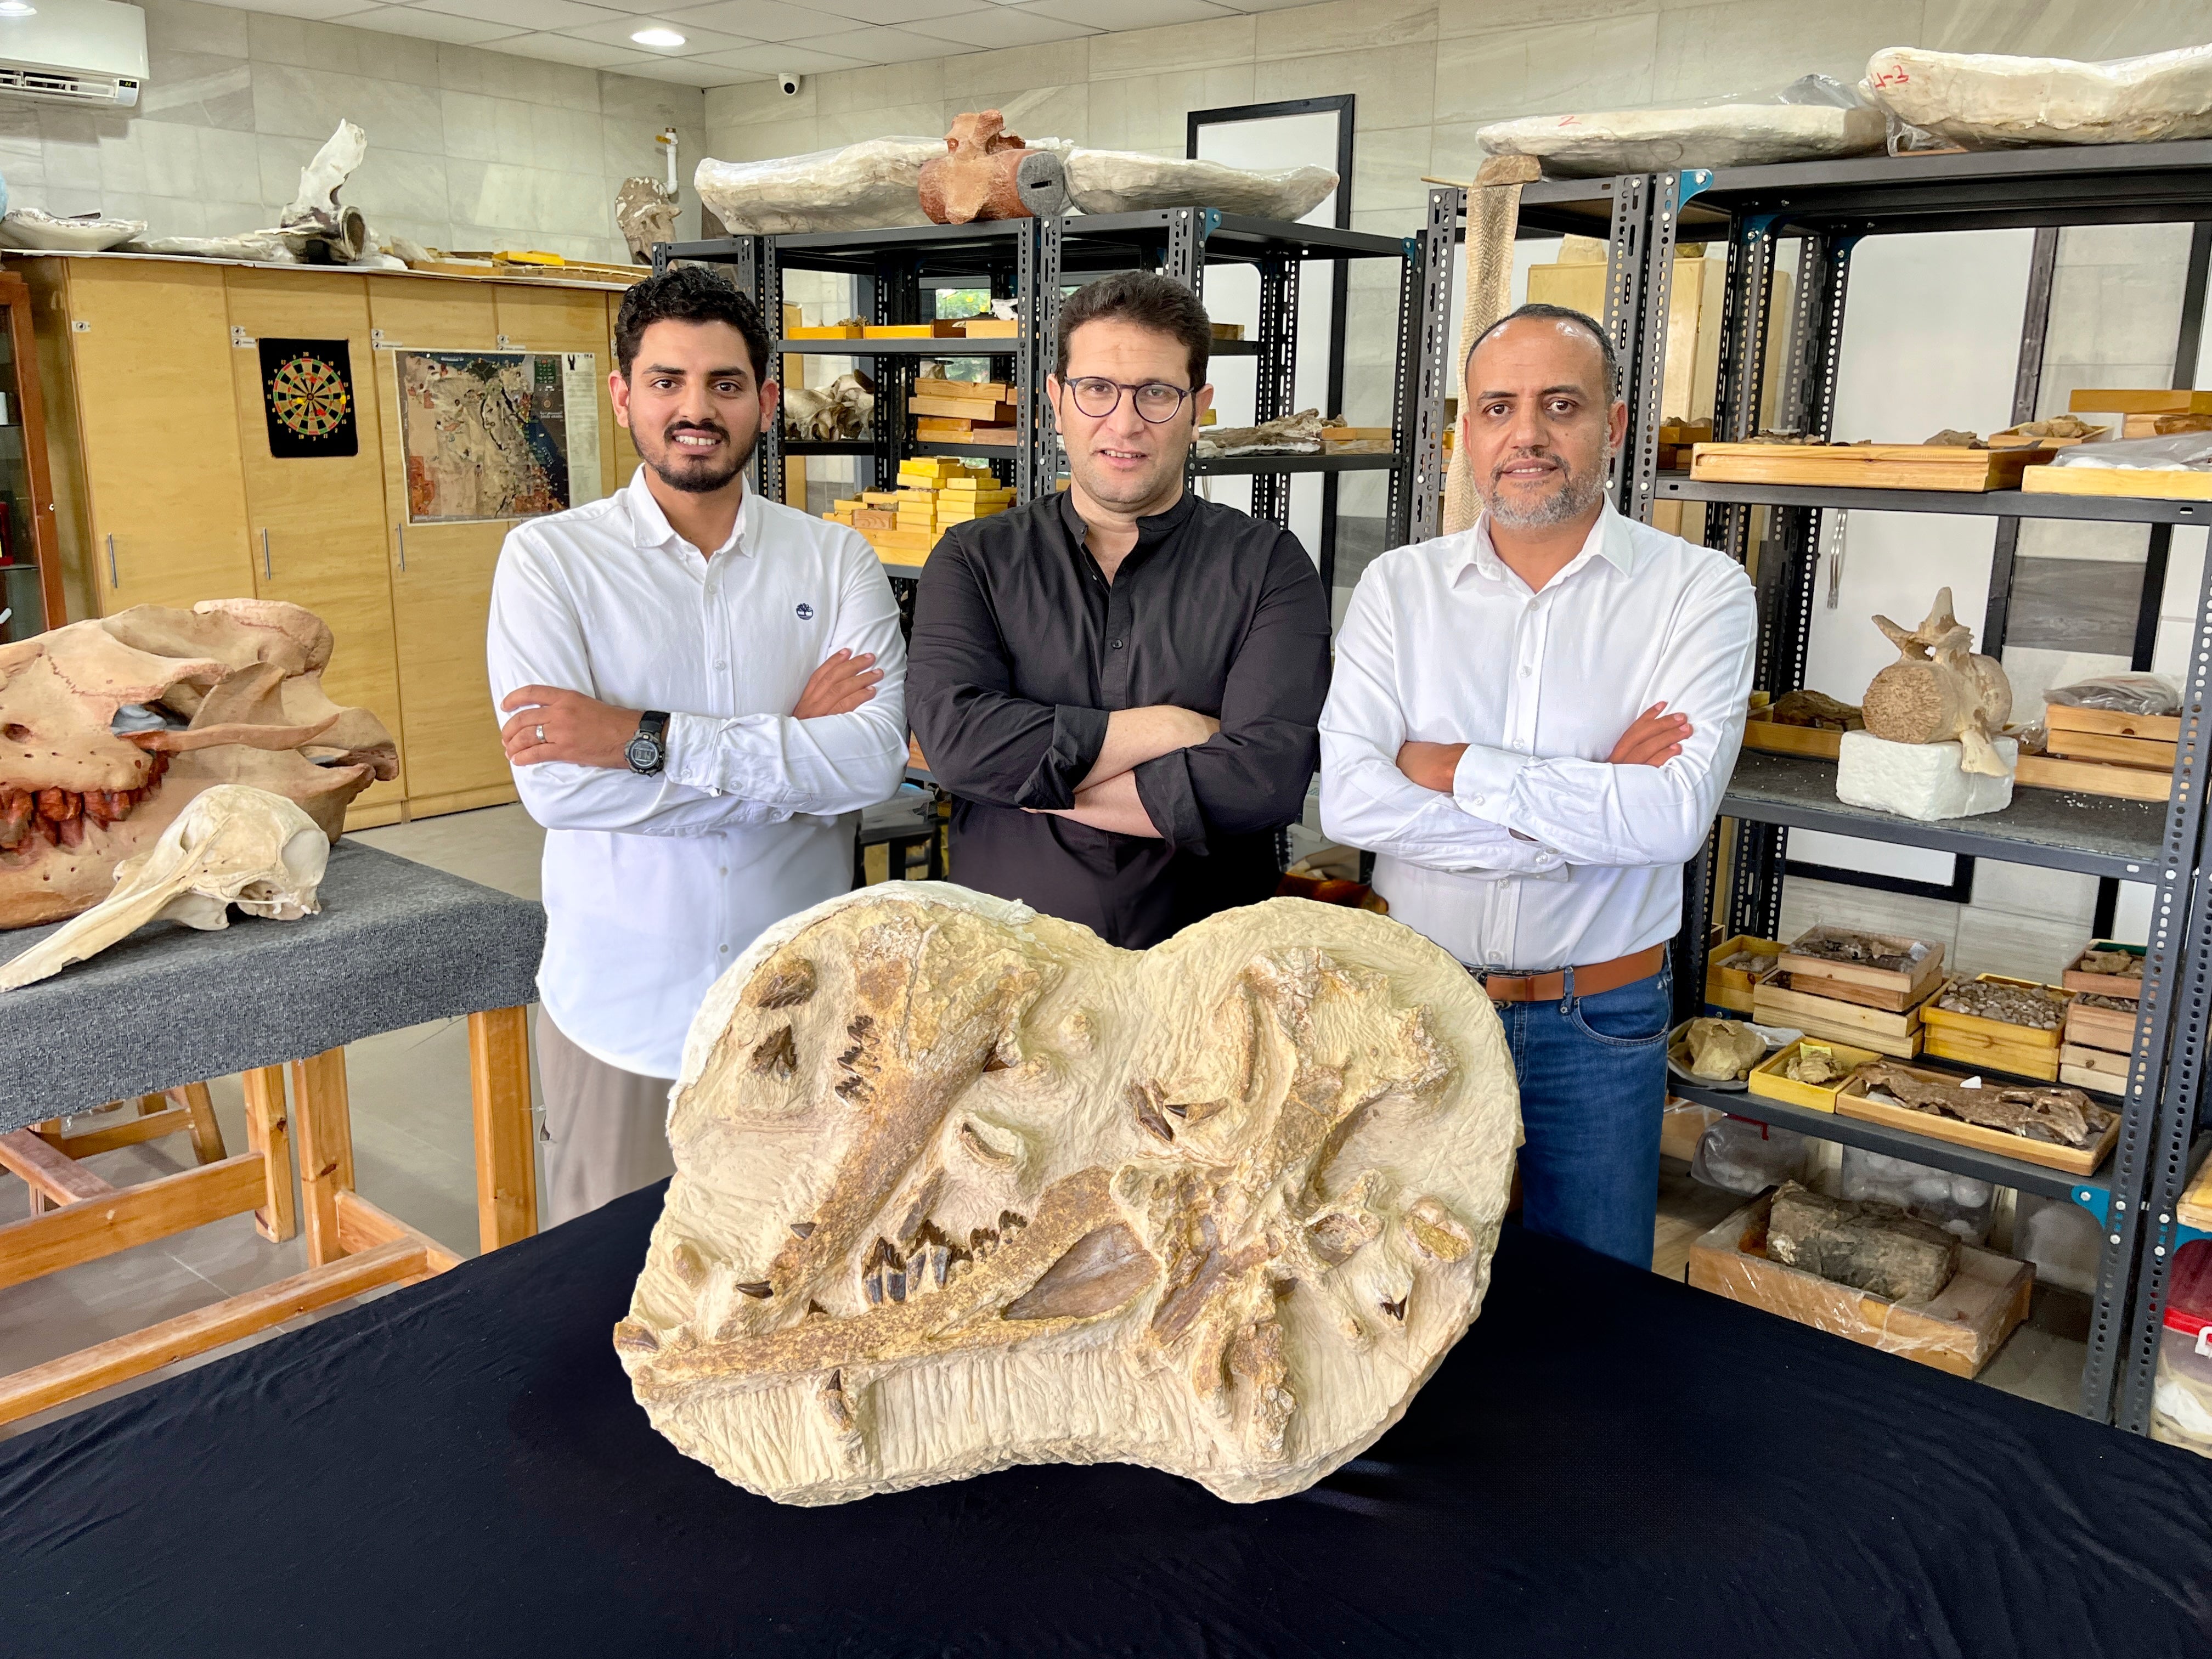 علماء الأحافير عبد الله جوهر ومحمد سامح وهشام سلام (من اليسار إلى اليمين) مع أحافير من النوع الأصلي للحوت.